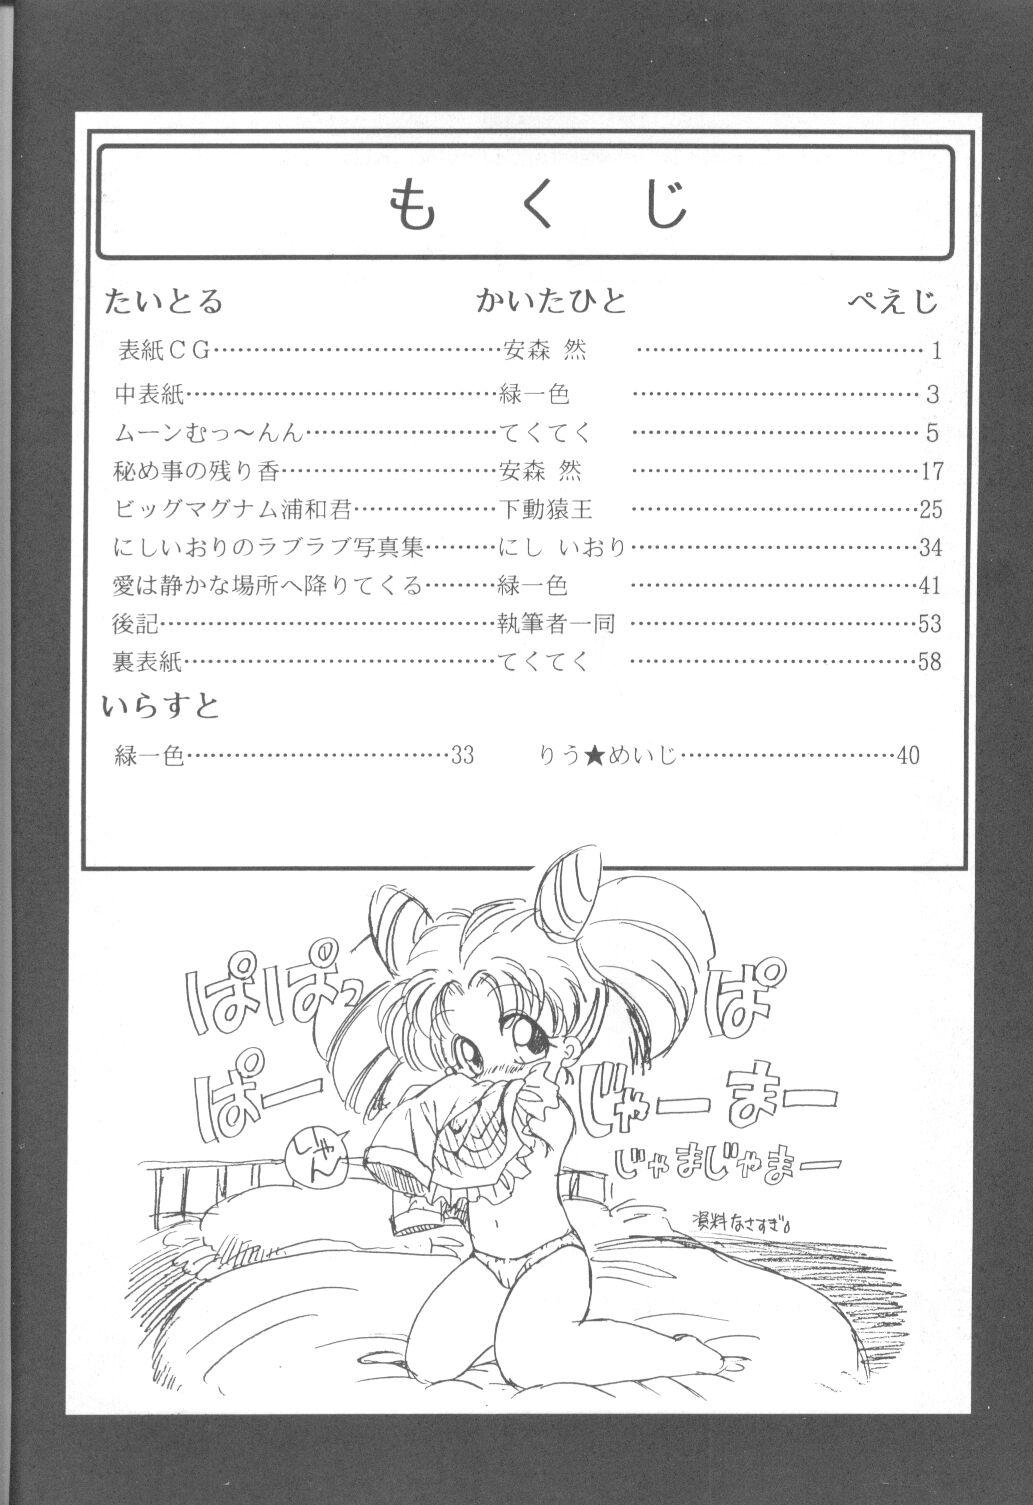 Russian Tabeta Kigasuru 9 - Sailor moon Cavalgando - Page 3